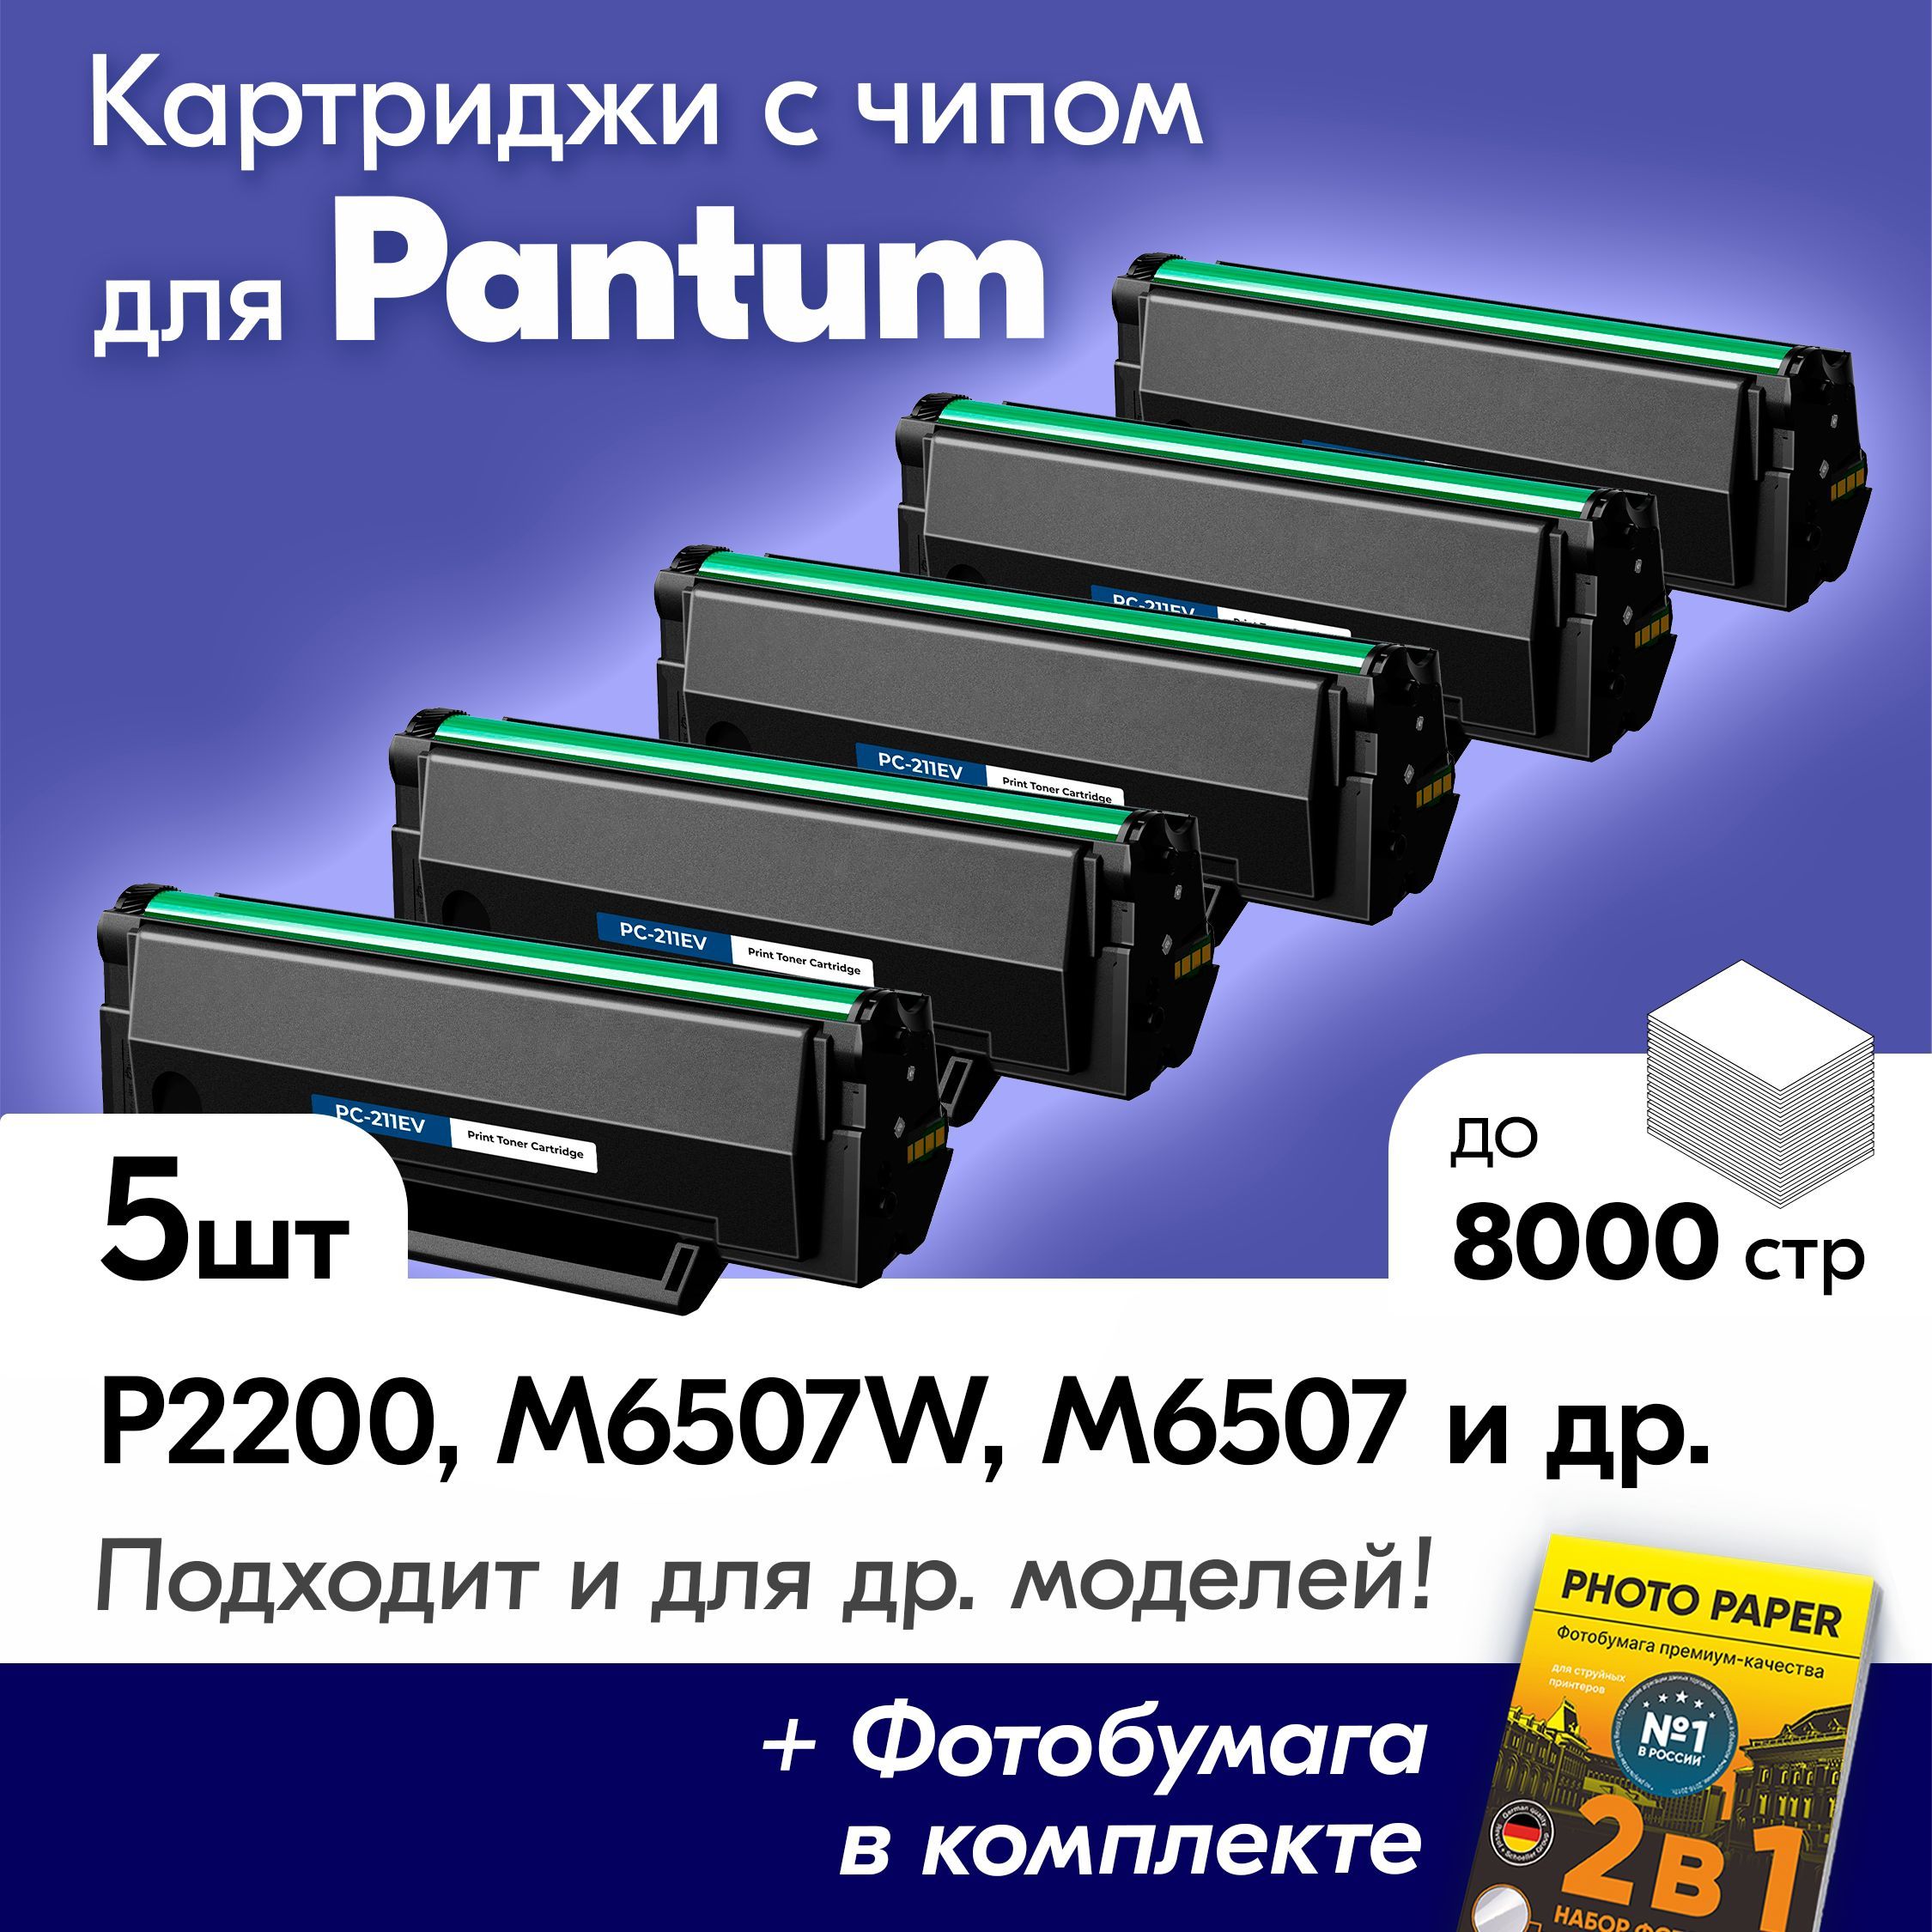 Pabtum pc211prb. Принтер лазерный Pantum p2502. Принтер монохромный Pantum p2207. Pantum 6550nw застряла бумага. Pantum m6507w отзывы